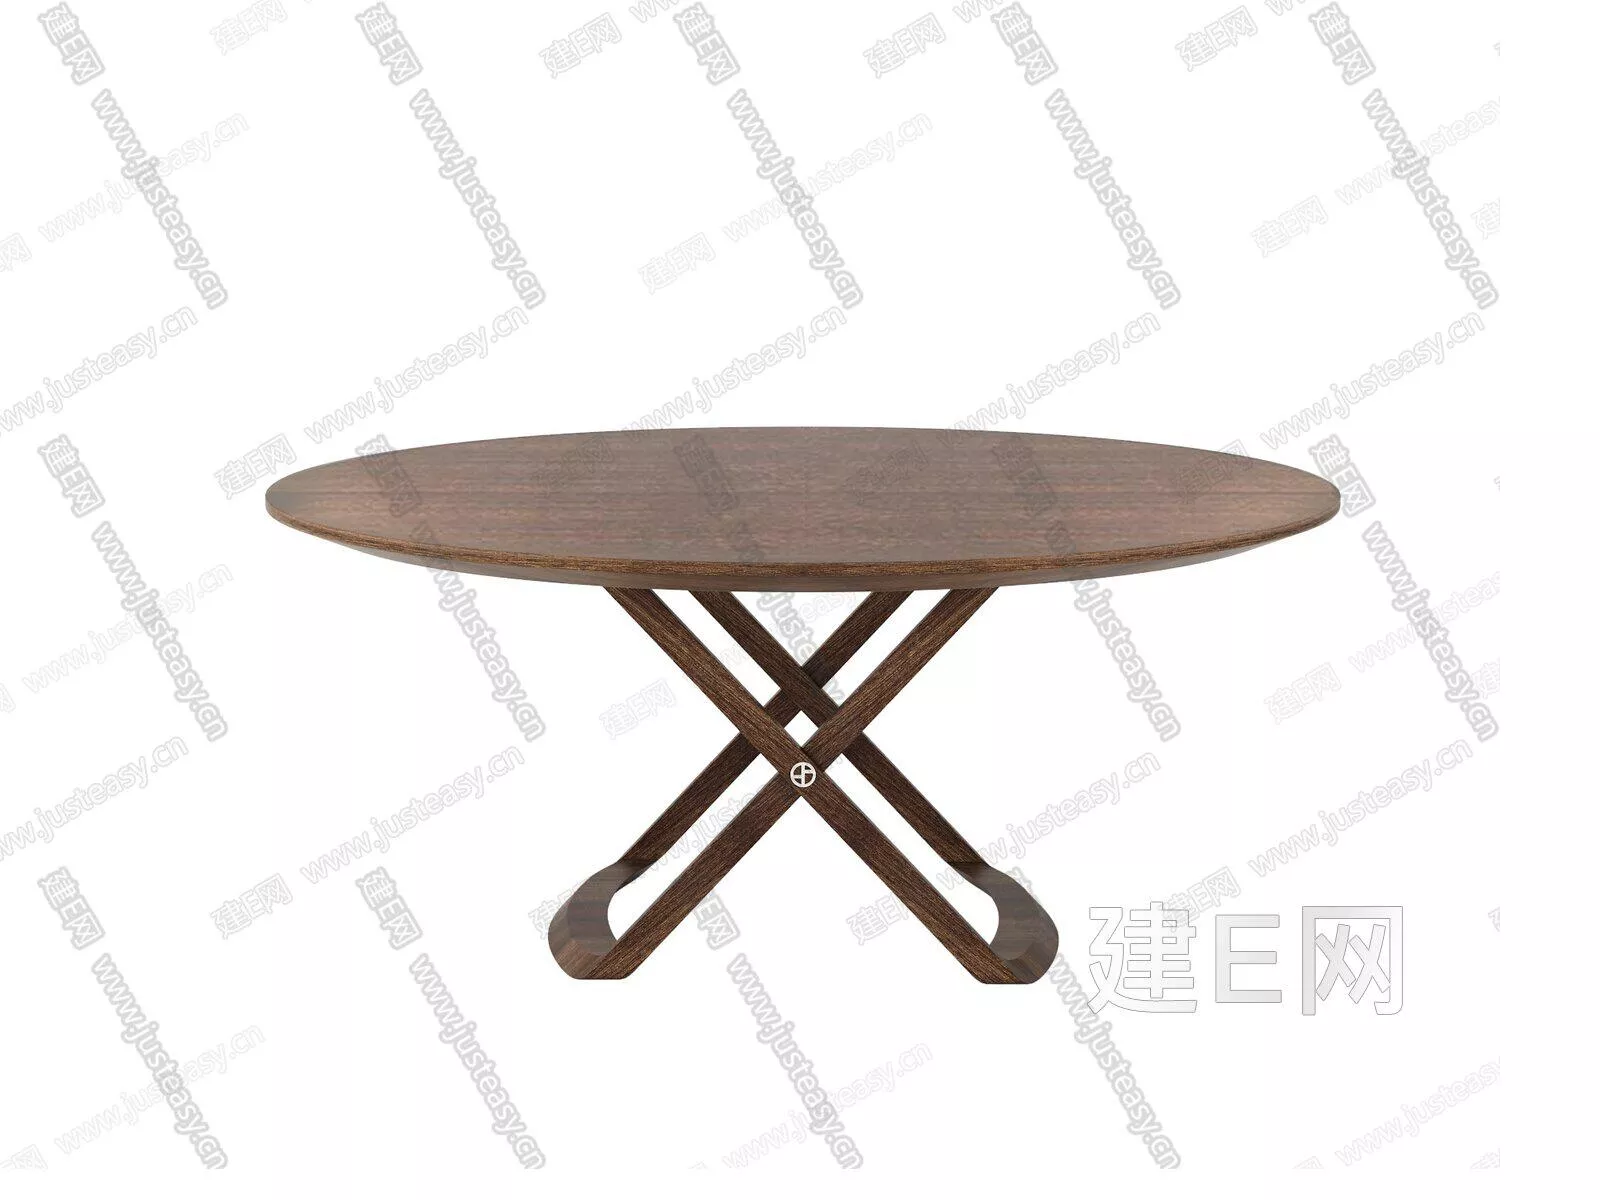 MODERN DINING TABLE SET - SKETCHUP 3D MODEL - ENSCAPE - 104941720